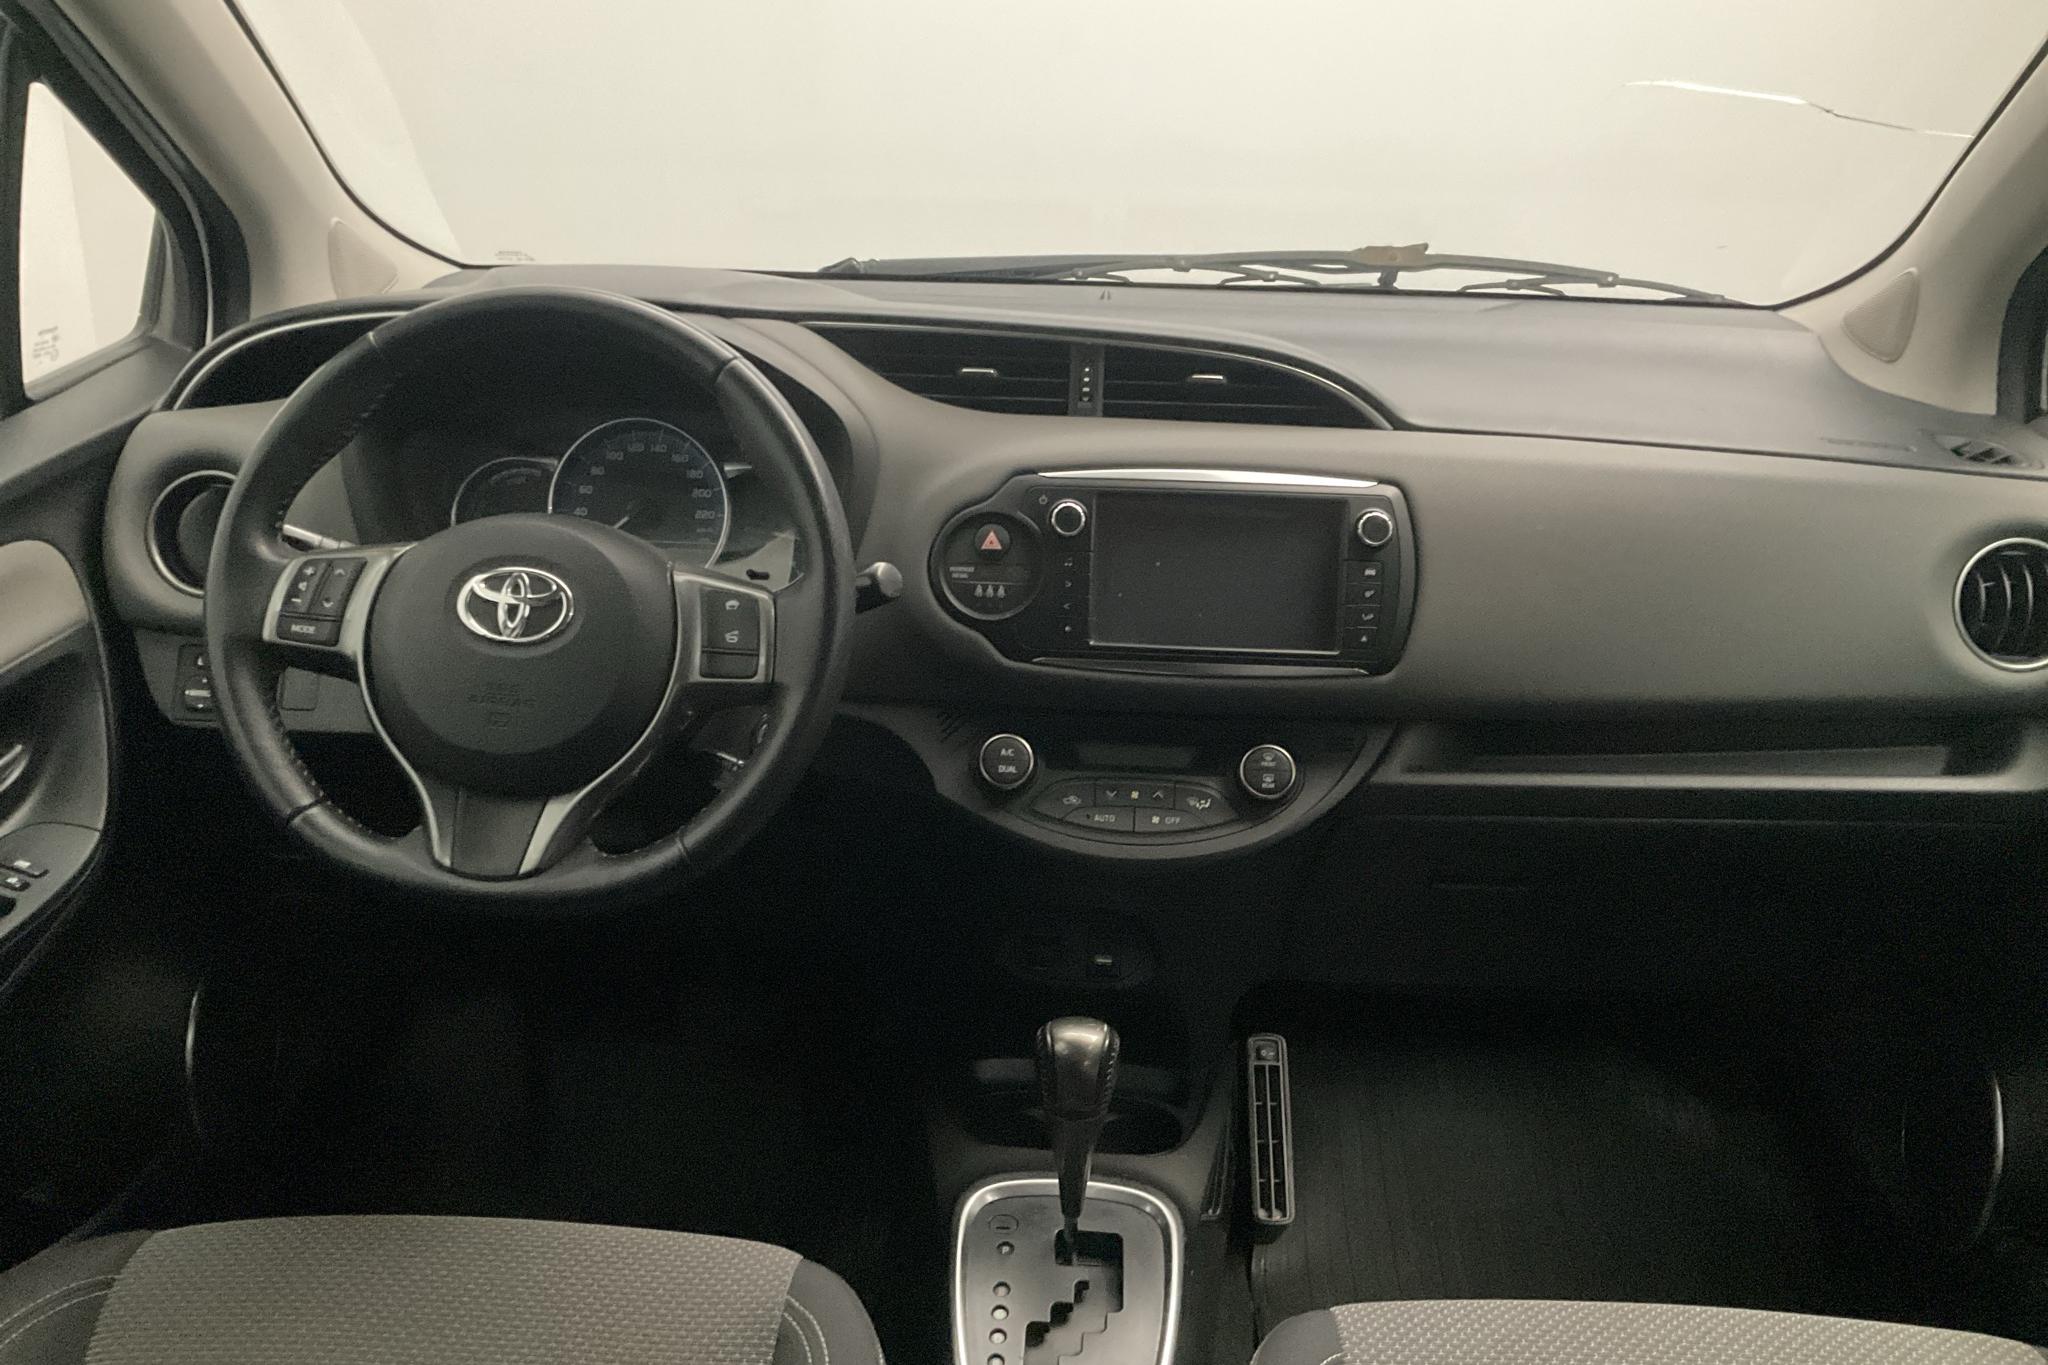 Toyota Yaris 1.5 HSD 5dr (75hk) - 108 100 km - Automatyczna - biały - 2015